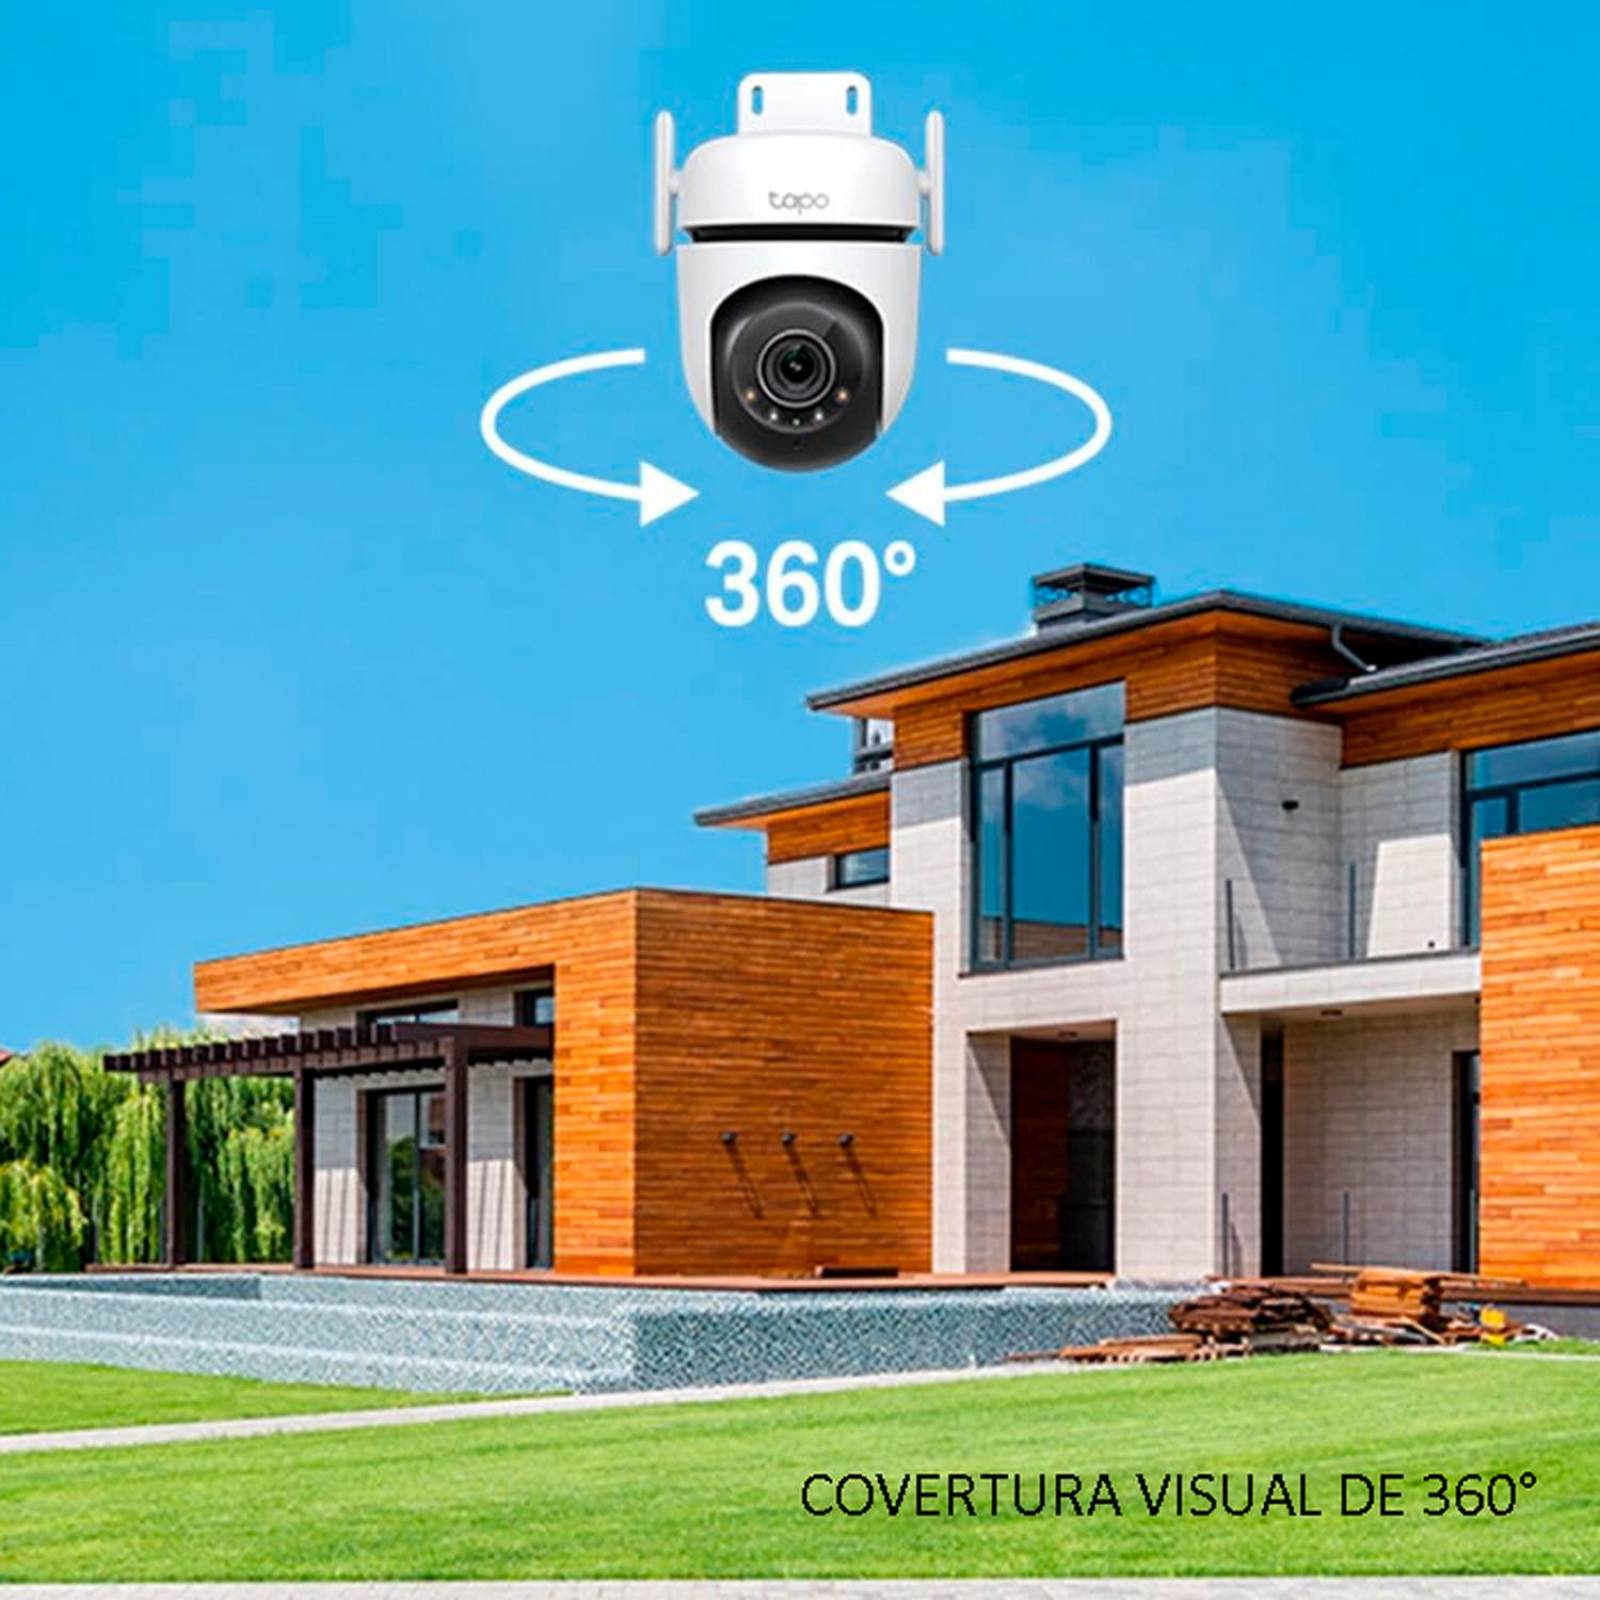 tapo C520WS - Cámara Vigilancia Wi-Fi Exterior 360°, Resolución 2K QHD,  Visión Nocturna en Color